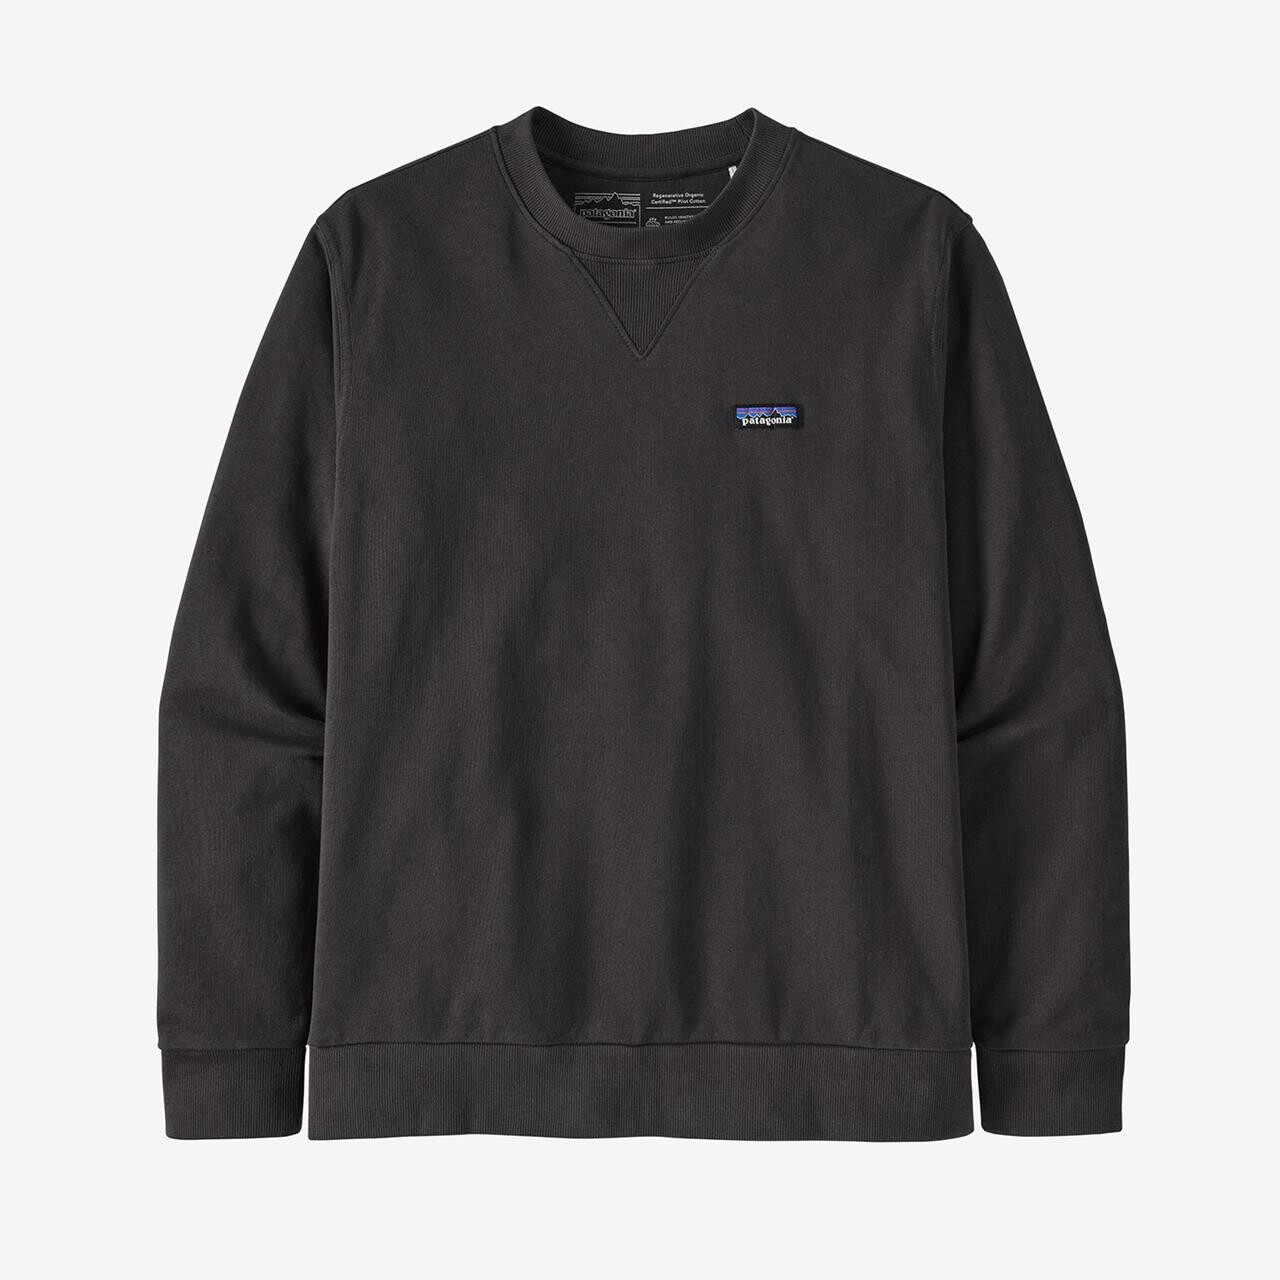 #3 - Patagonia Mens Organic Cotton Crewneck Sweatshirt (Sort (INK BLACK) Large)